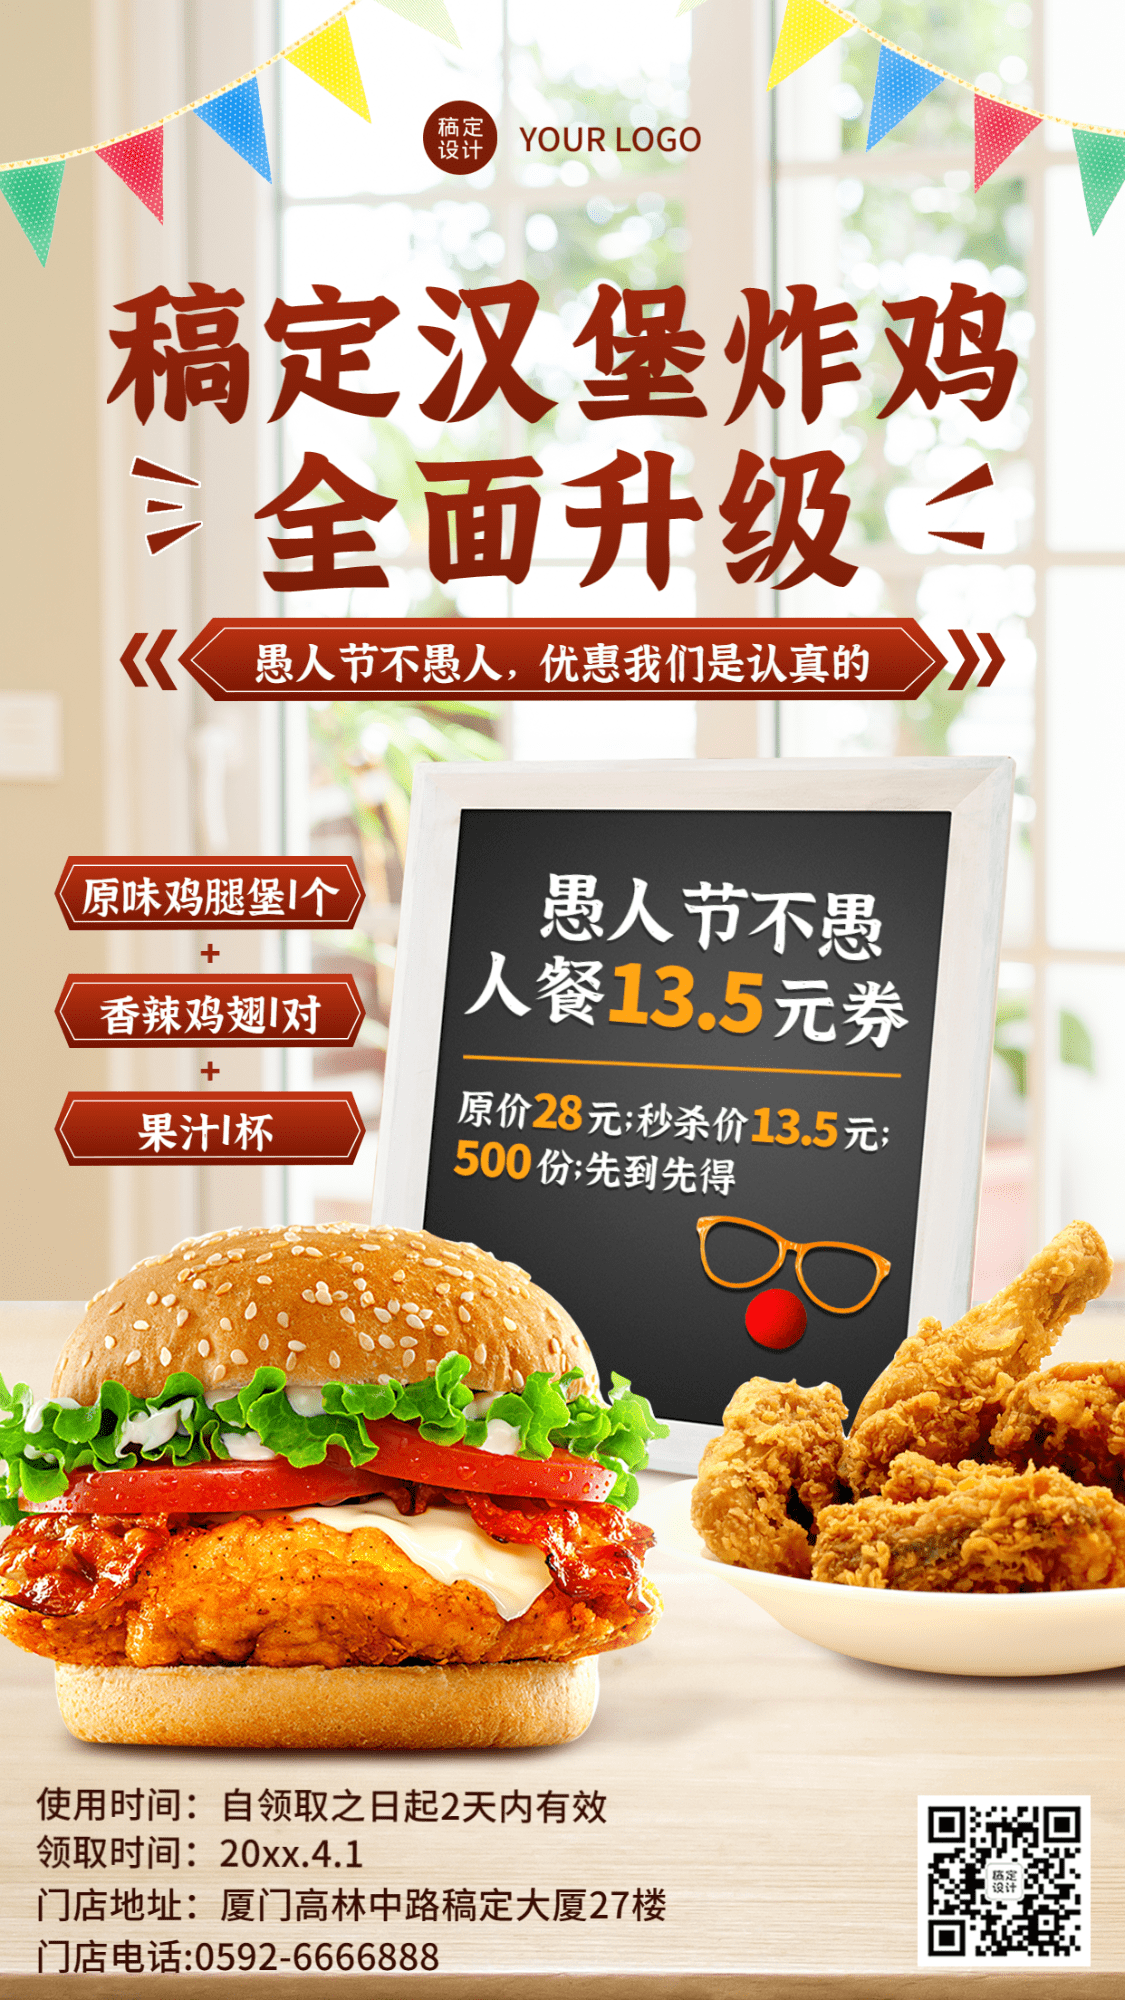 愚人节汉堡炸鸡营销促销餐饮手机海报预览效果